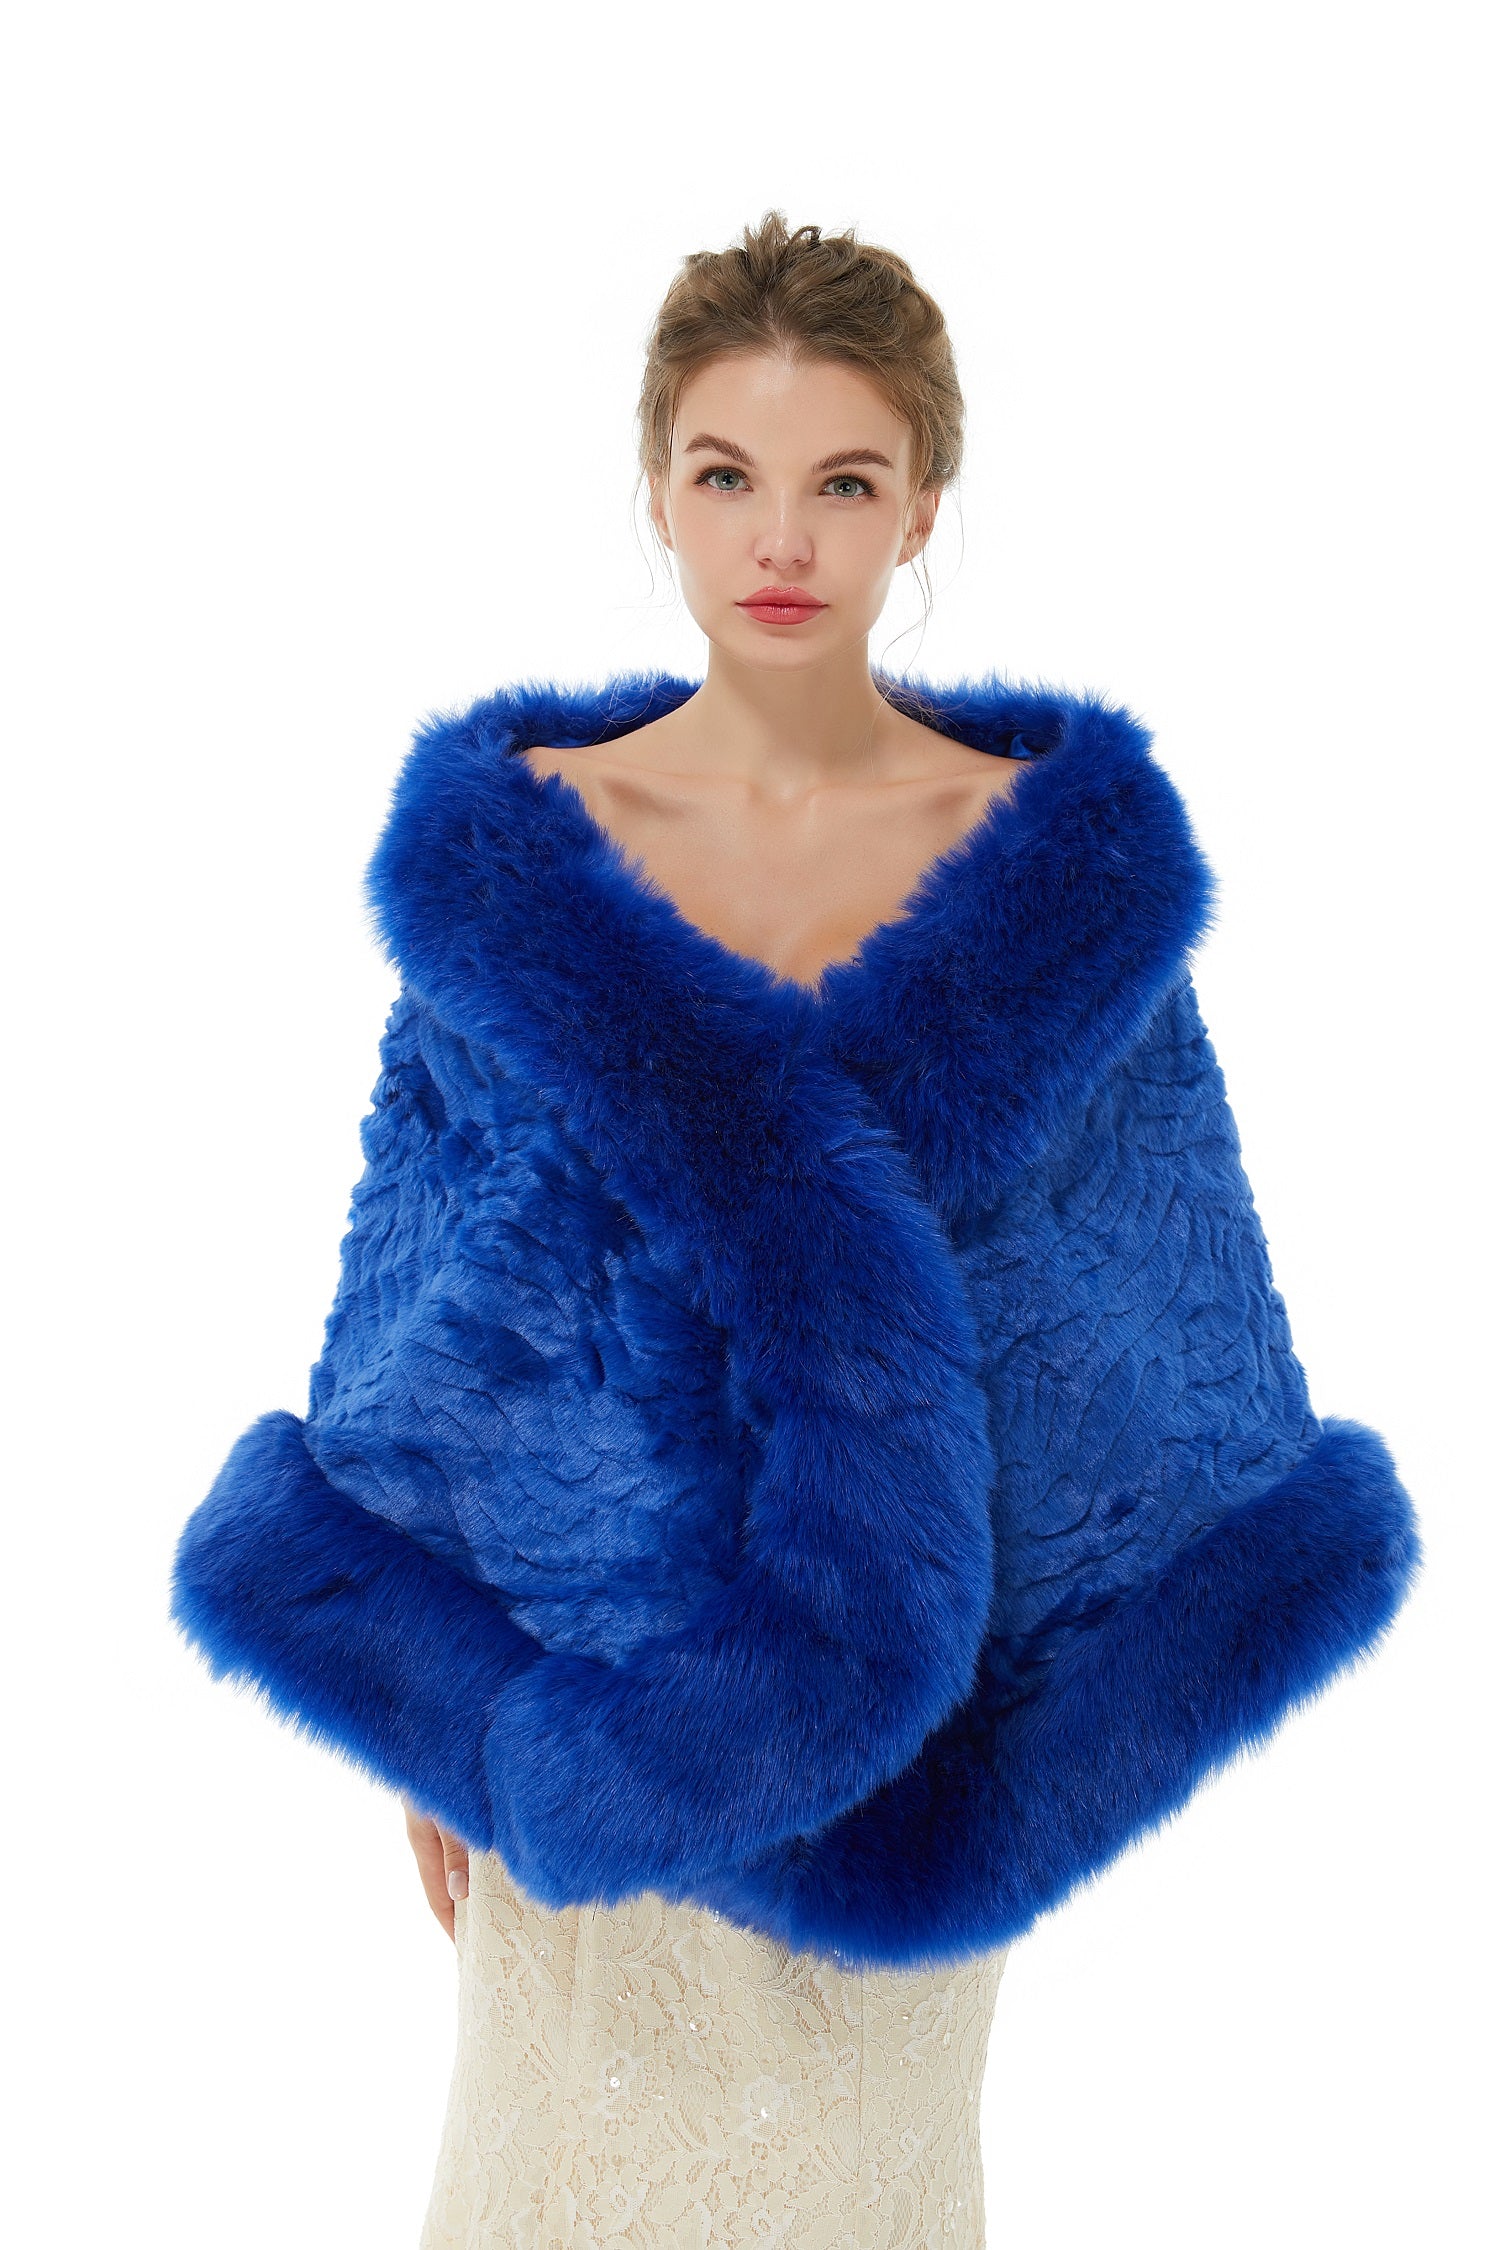 Beautiful Royal Blue Winter Faux Fur Wedding Wrap - lulusllly